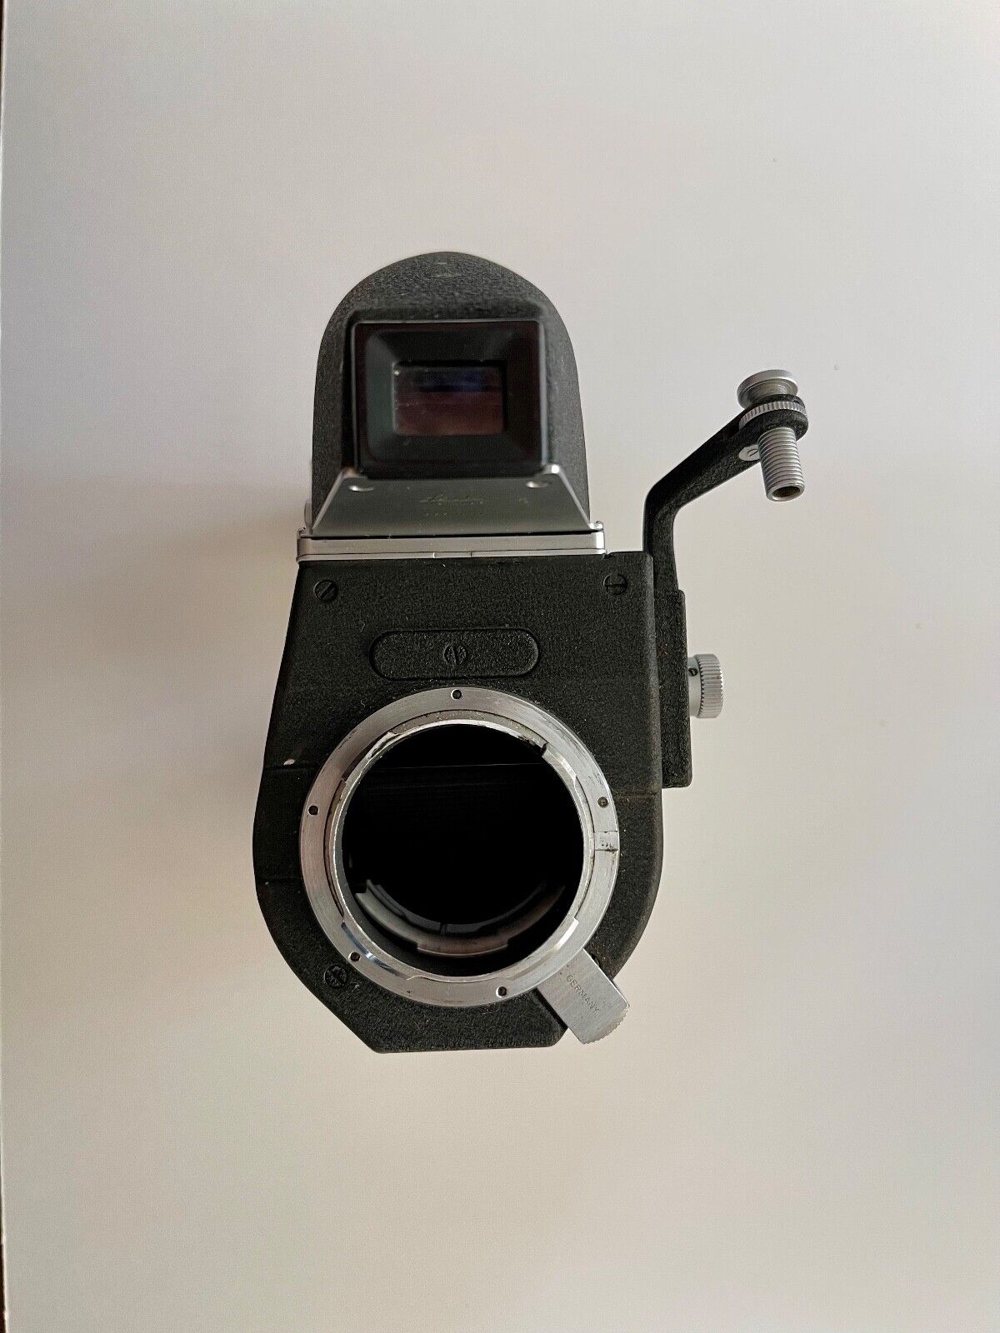 Set aus 2 Leitz M2 Kameras mit Objektiven, Zubehör und Leica Leitz Visoflex